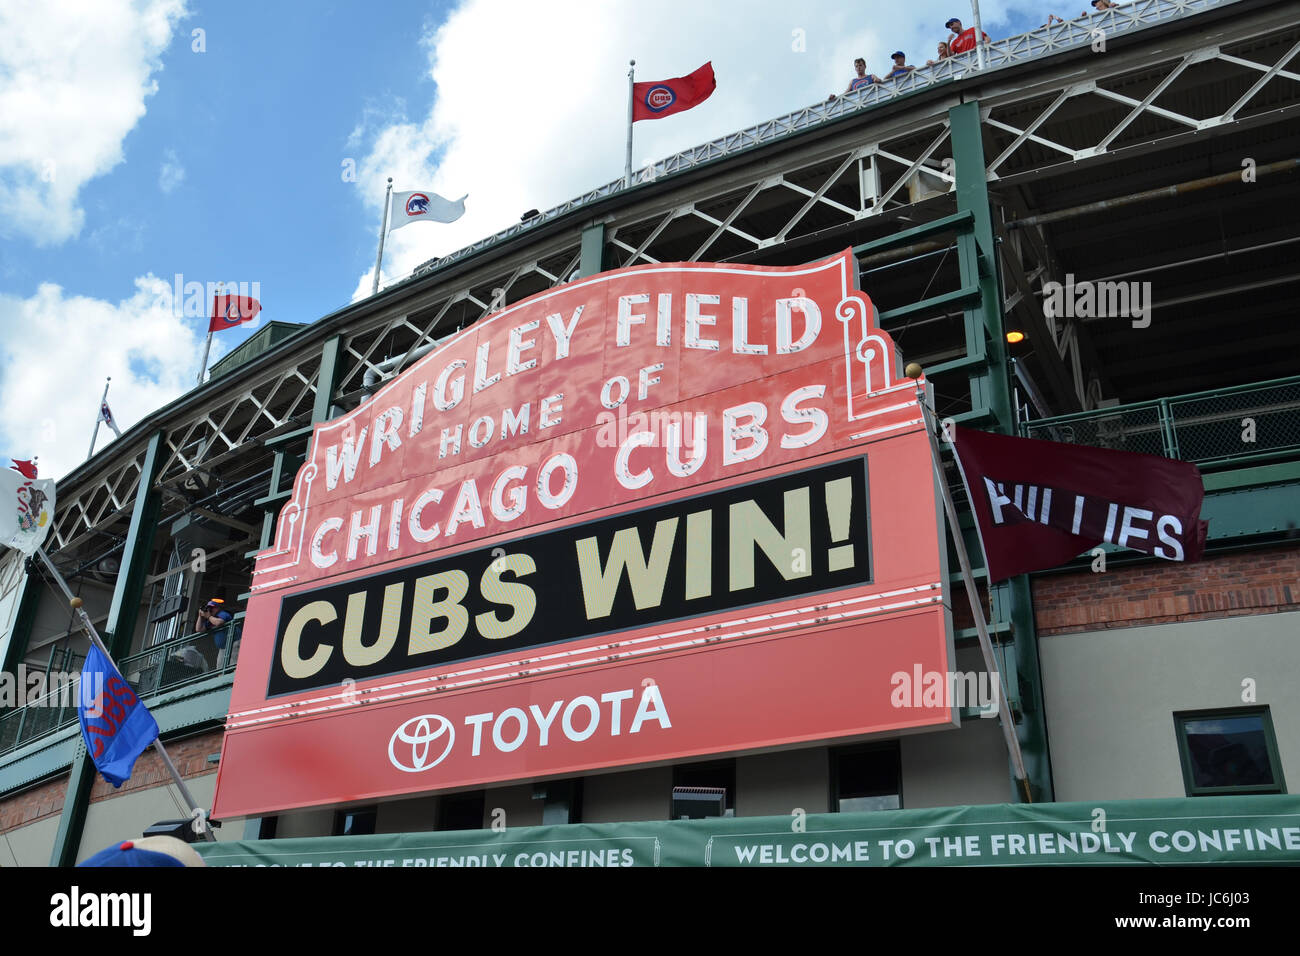 CHICAGO - 29 de mayo: Firmar en el Wrigley Field, hogar de los Chicago Cubs, aparece aquí el 29 de mayo de 2016 tras su7-2 ganar contra los Phillies de Filadelfia Foto de stock